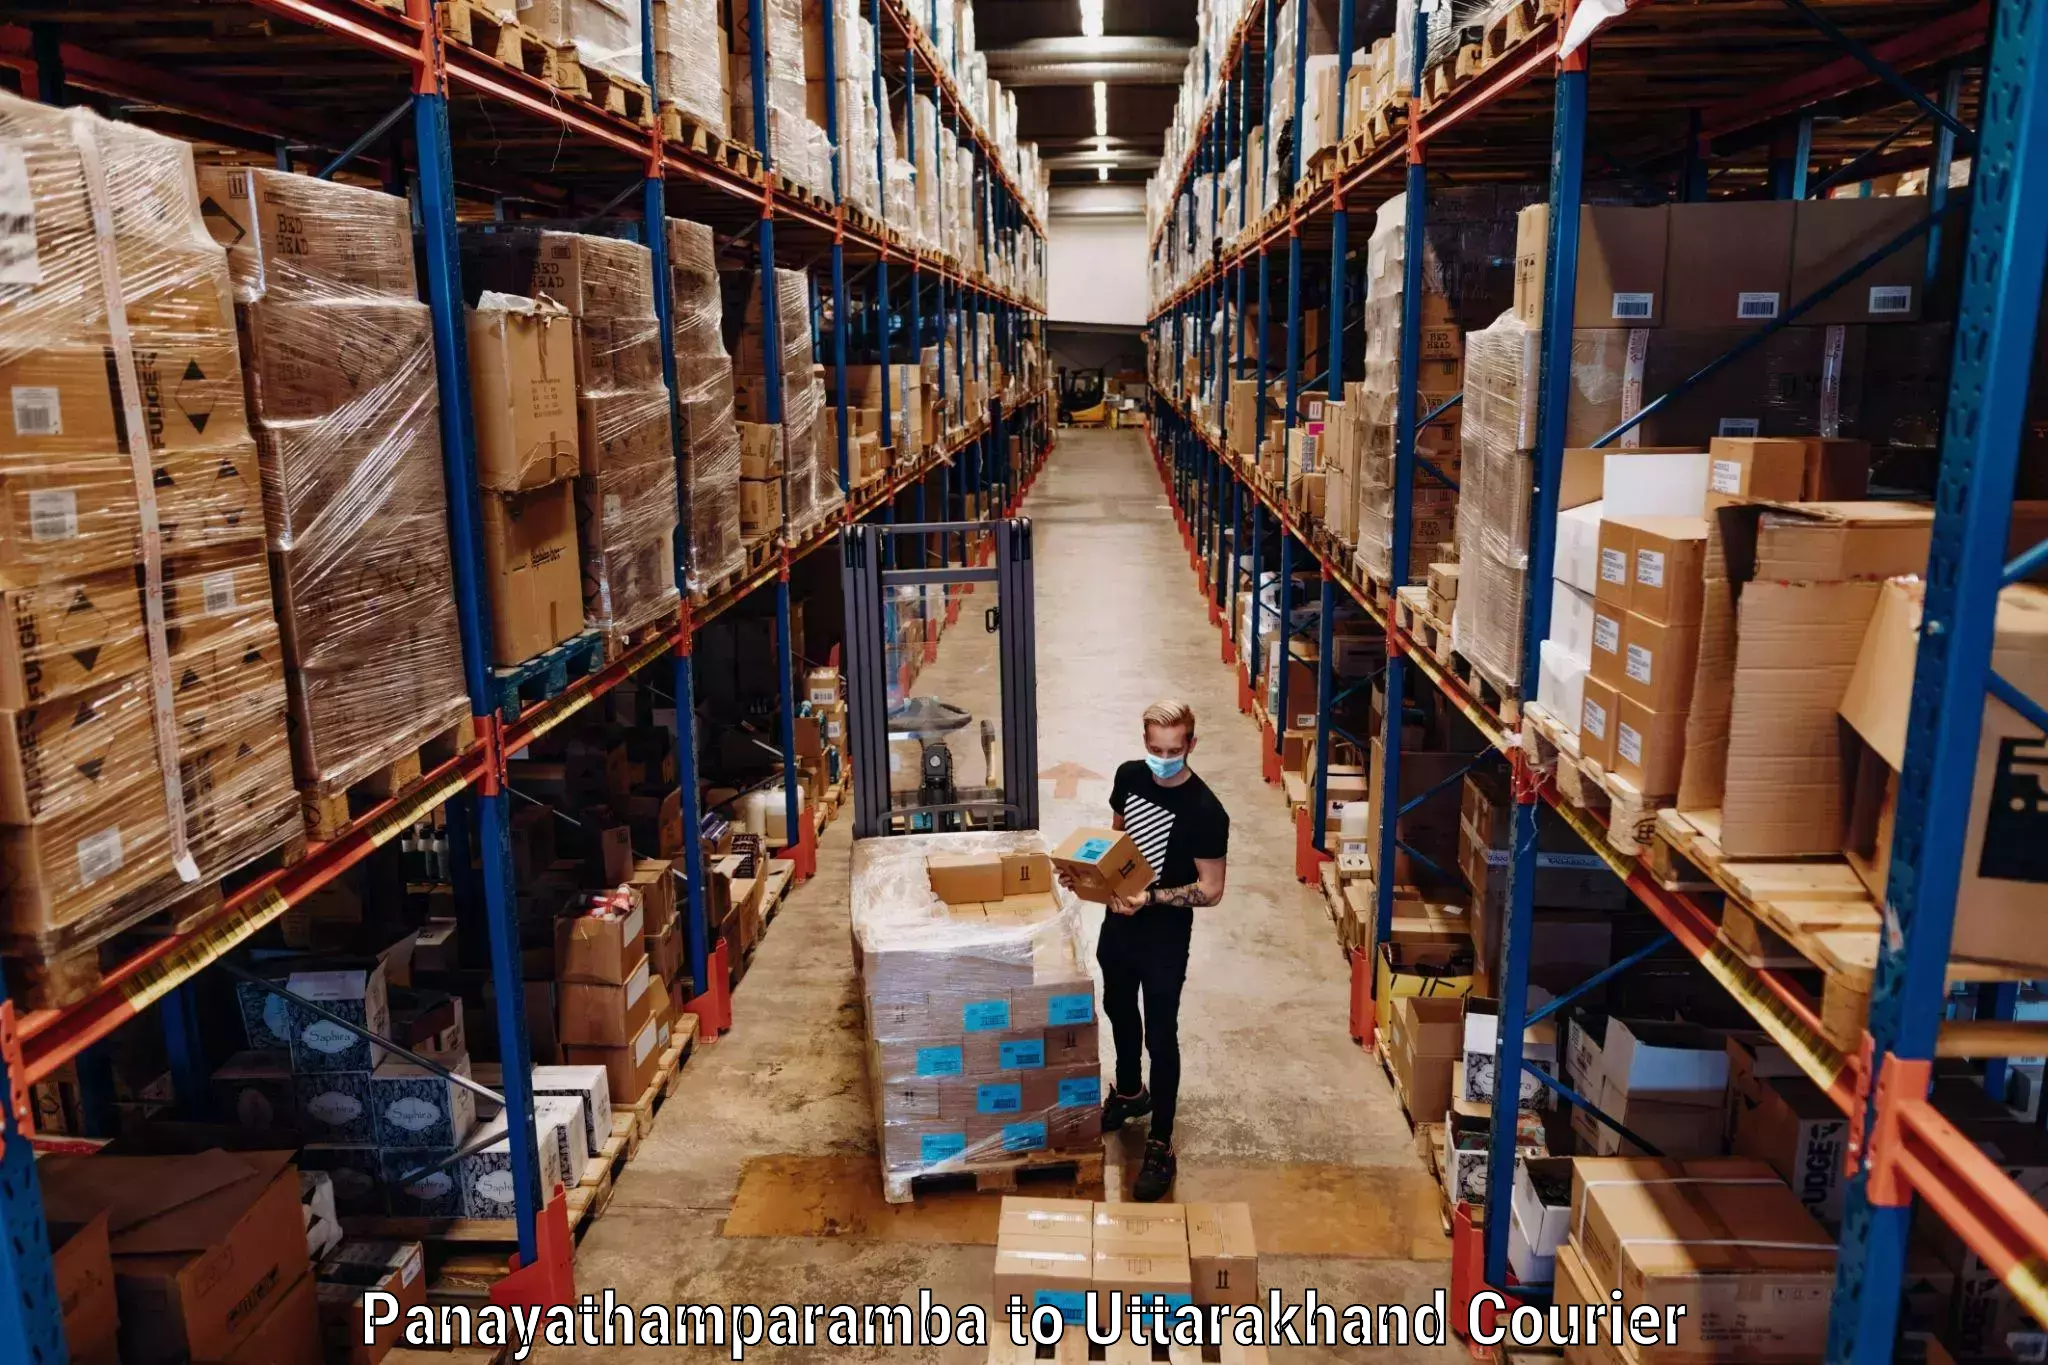 Urgent luggage shipment in Panayathamparamba to Uttarakhand